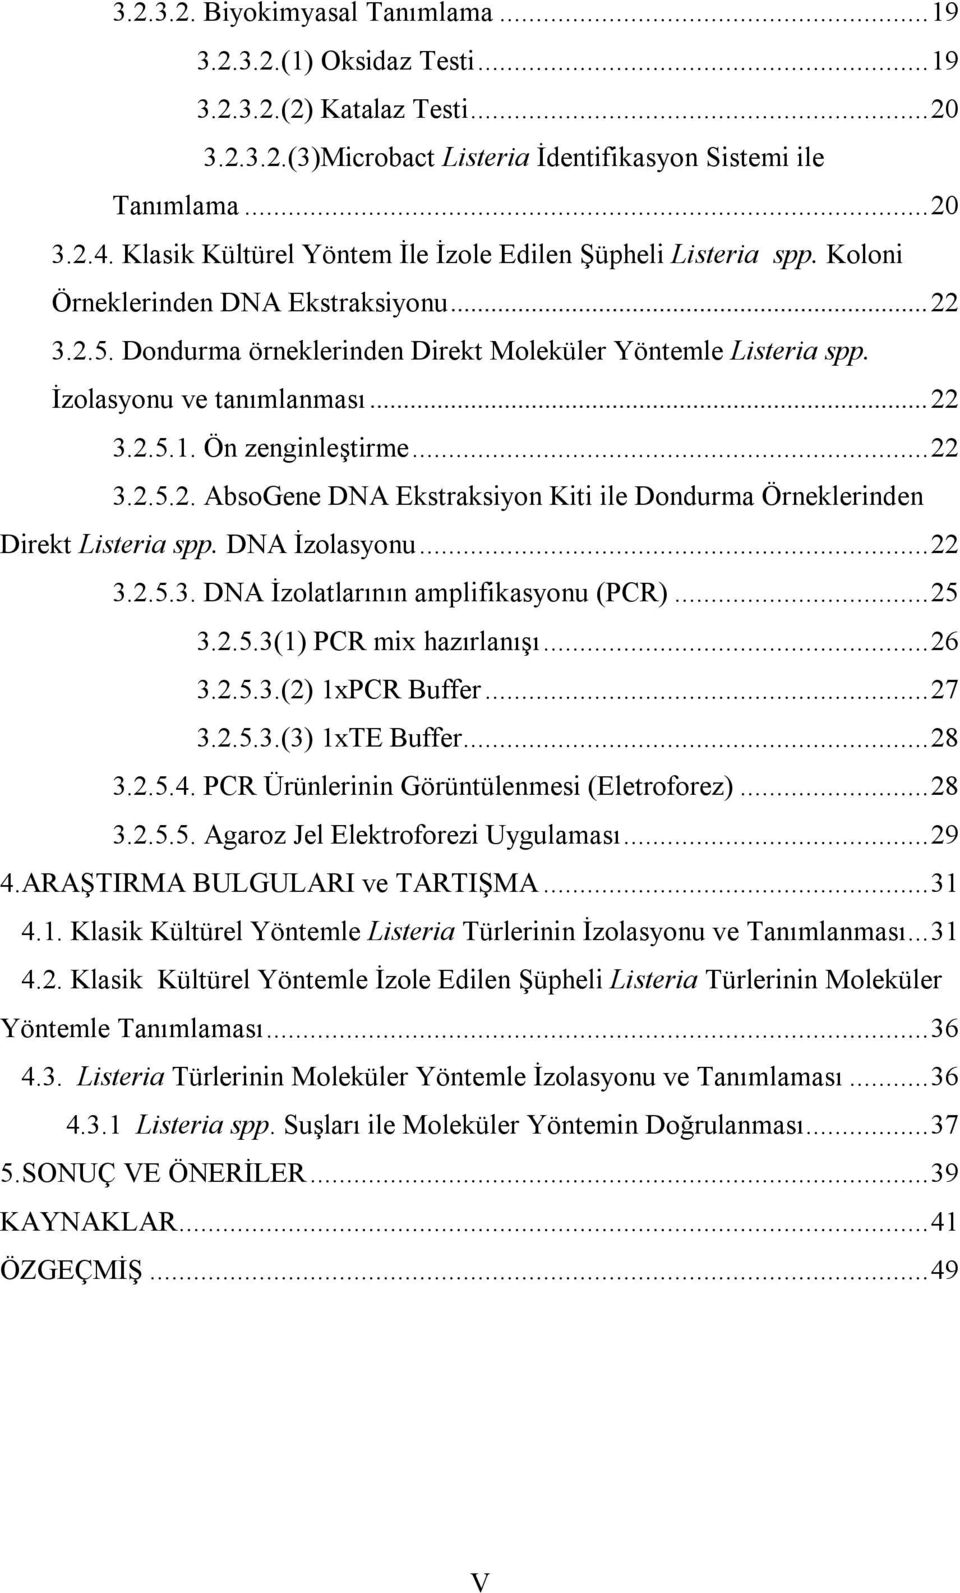 İzolasyonu ve tanımlanması... 22 3.2.5.1. Ön zenginleştirme... 22 3.2.5.2. AbsoGene DNA Ekstraksiyon Kiti ile Dondurma Örneklerinden Direkt Listeria spp. DNA İzolasyonu... 22 3.2.5.3. DNA İzolatlarının amplifikasyonu (PCR).